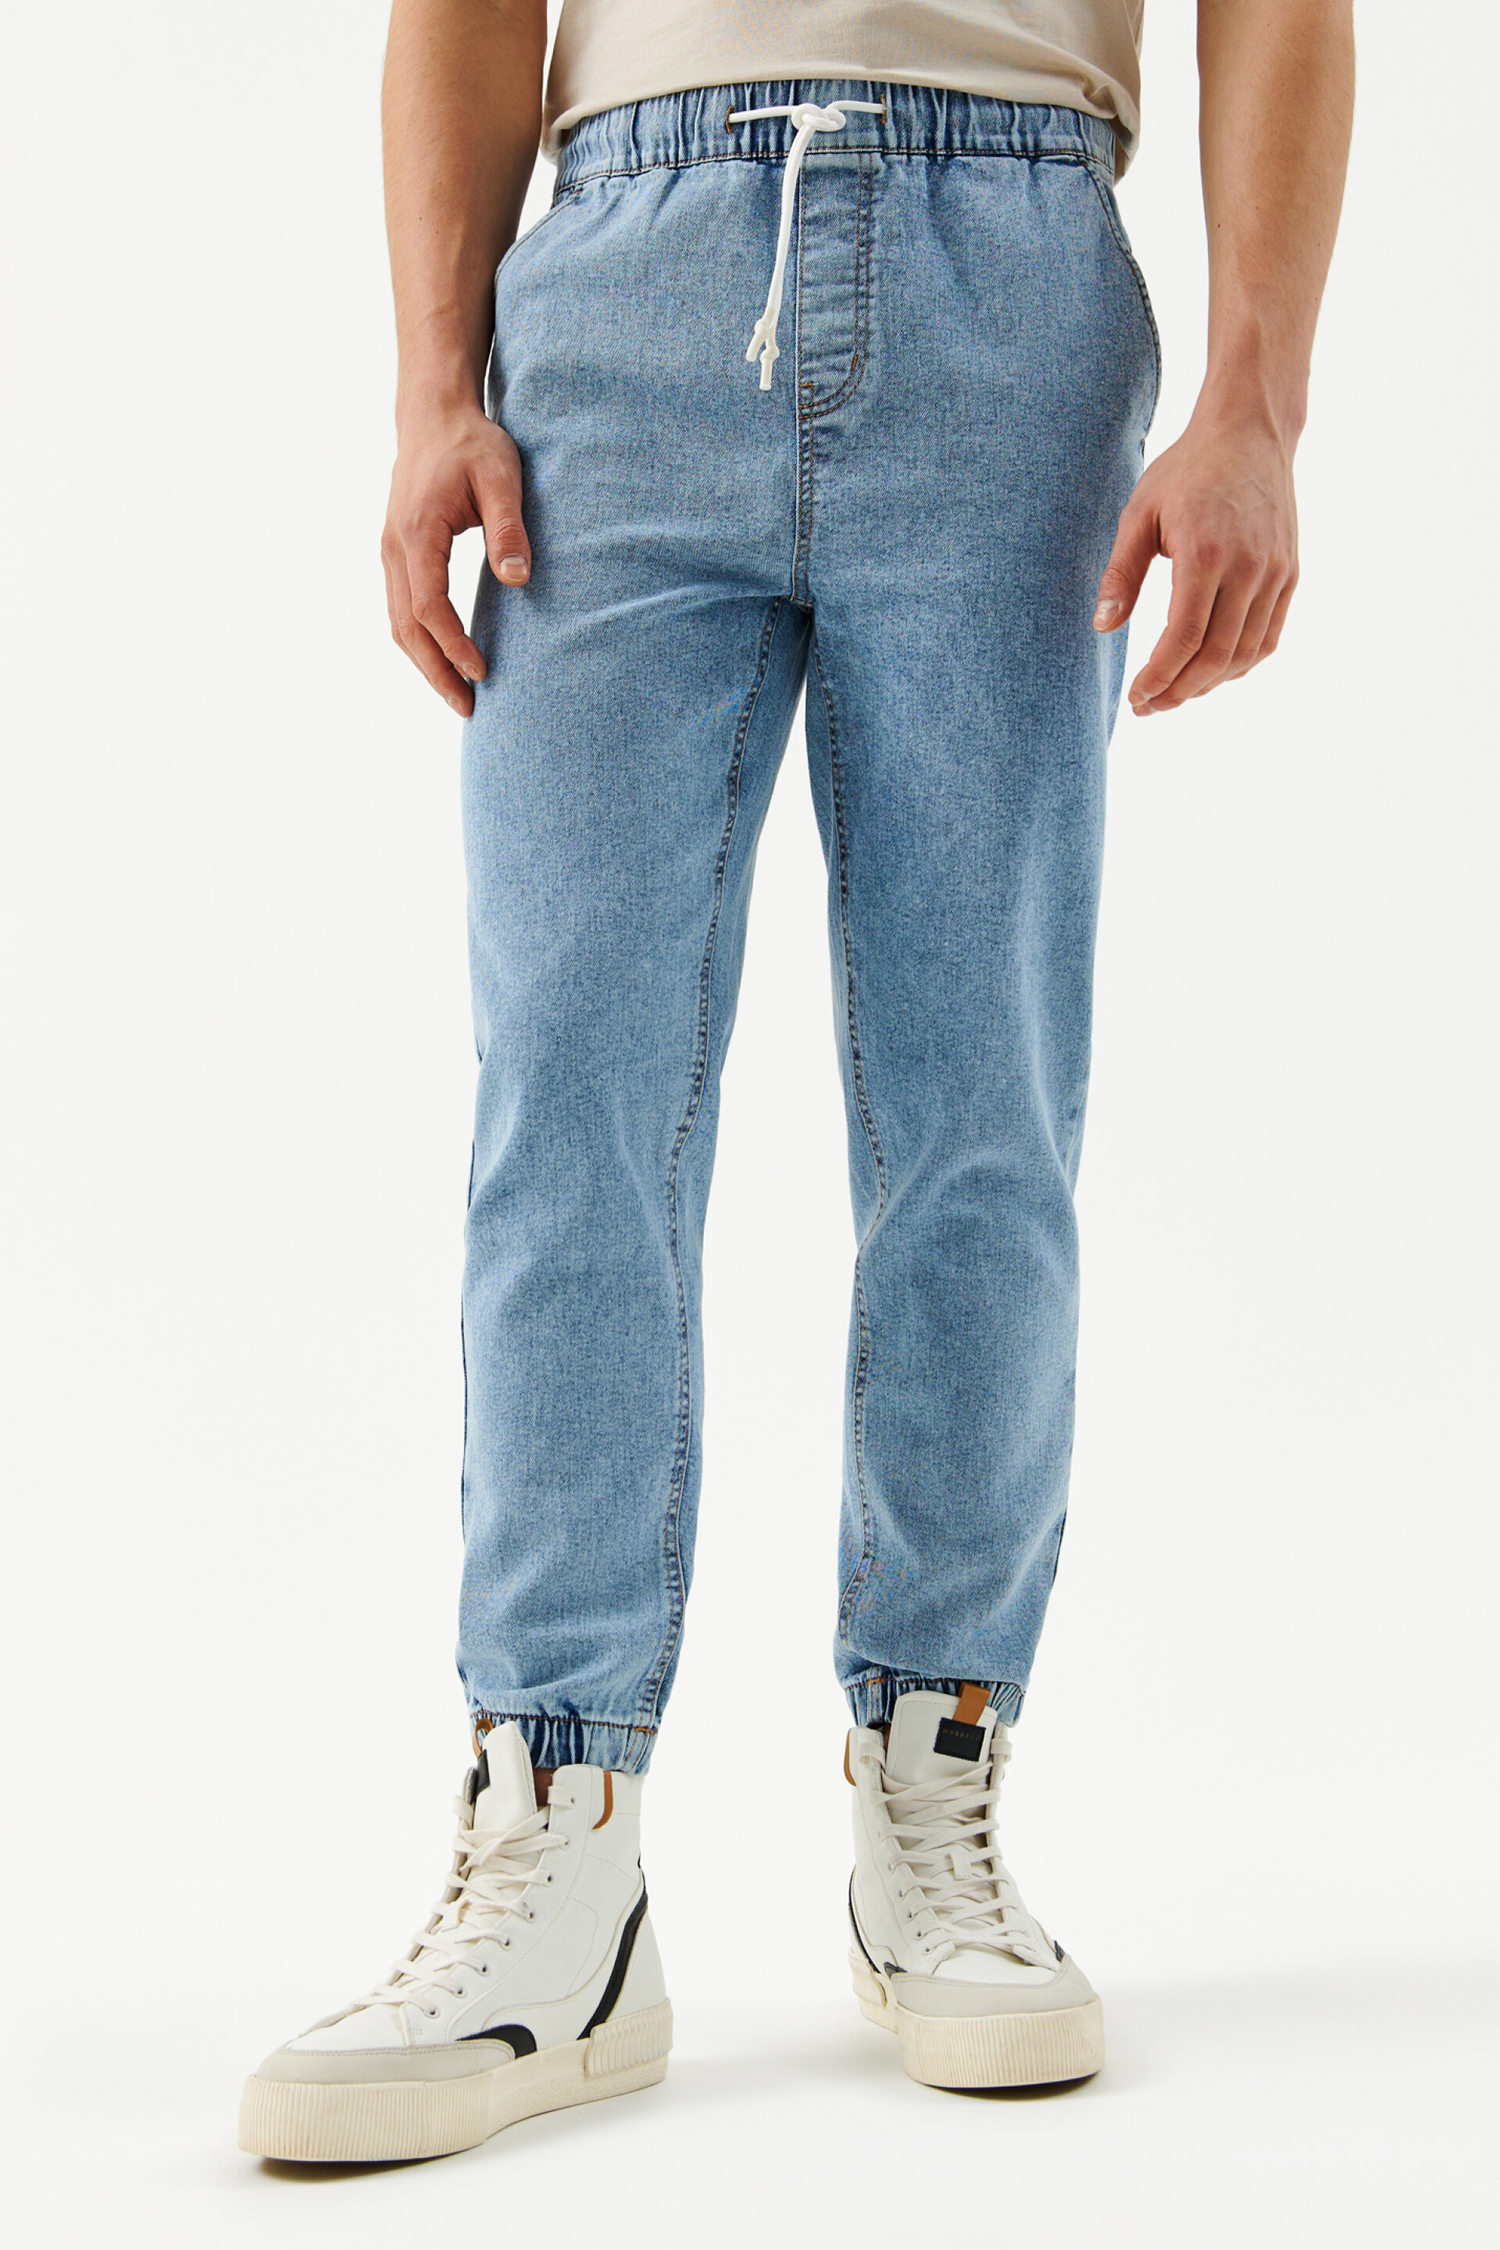 Брюки джинсовые мужские befree индиго (размер: 30) (2229508738$D) купить -SKU10714251